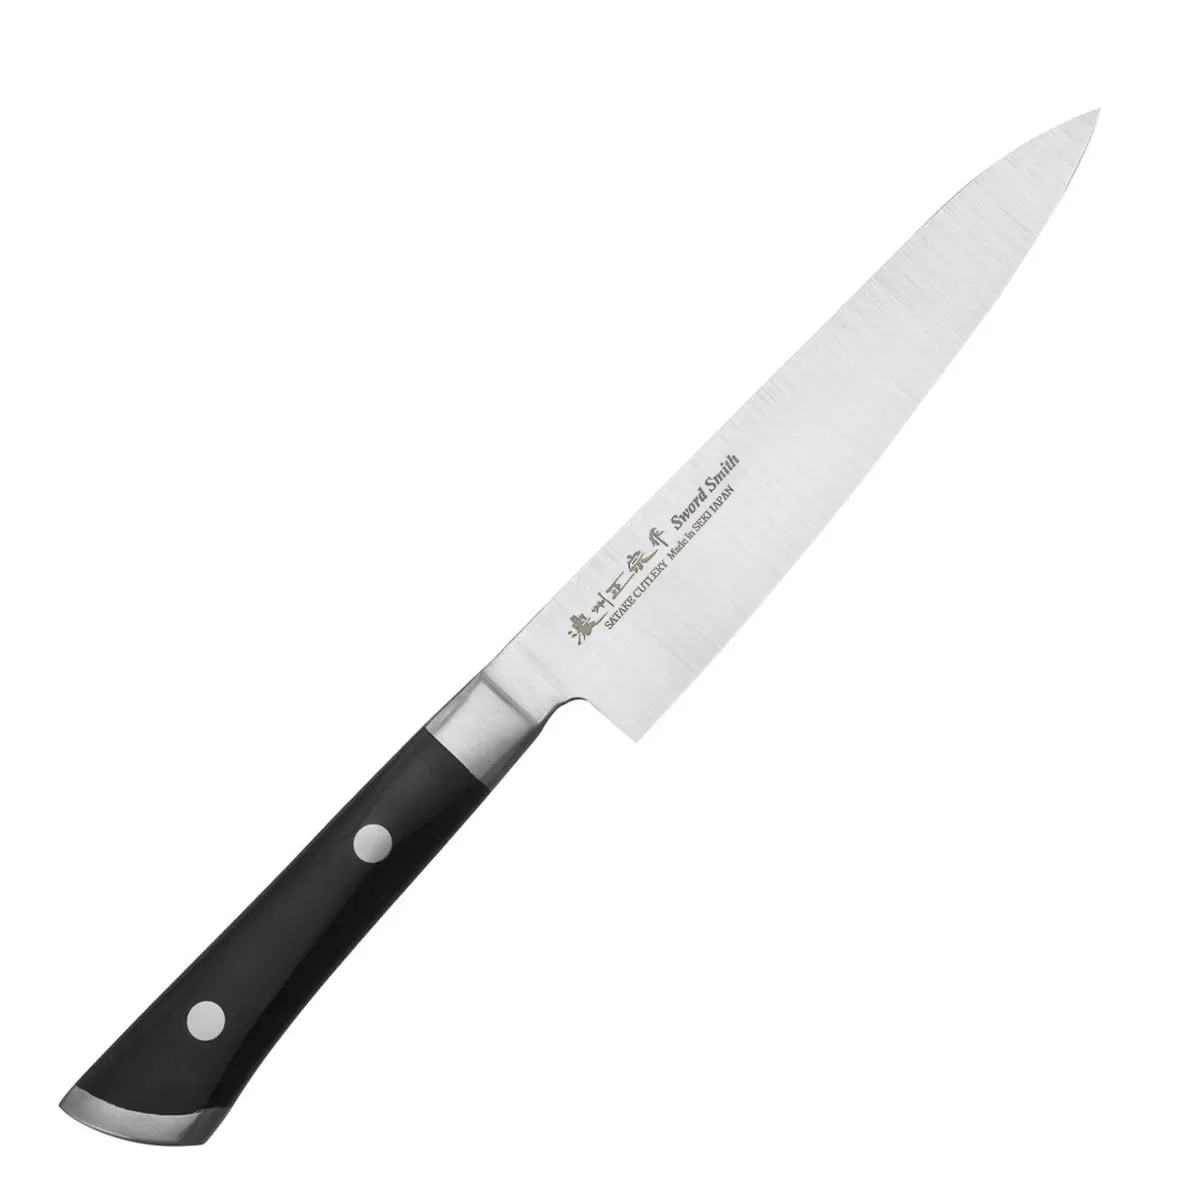 Нож кухонный Универсал Satake "Hiroki" 135мм, сталь AUS-8 57-58HRC ручка ABS пластик Япония